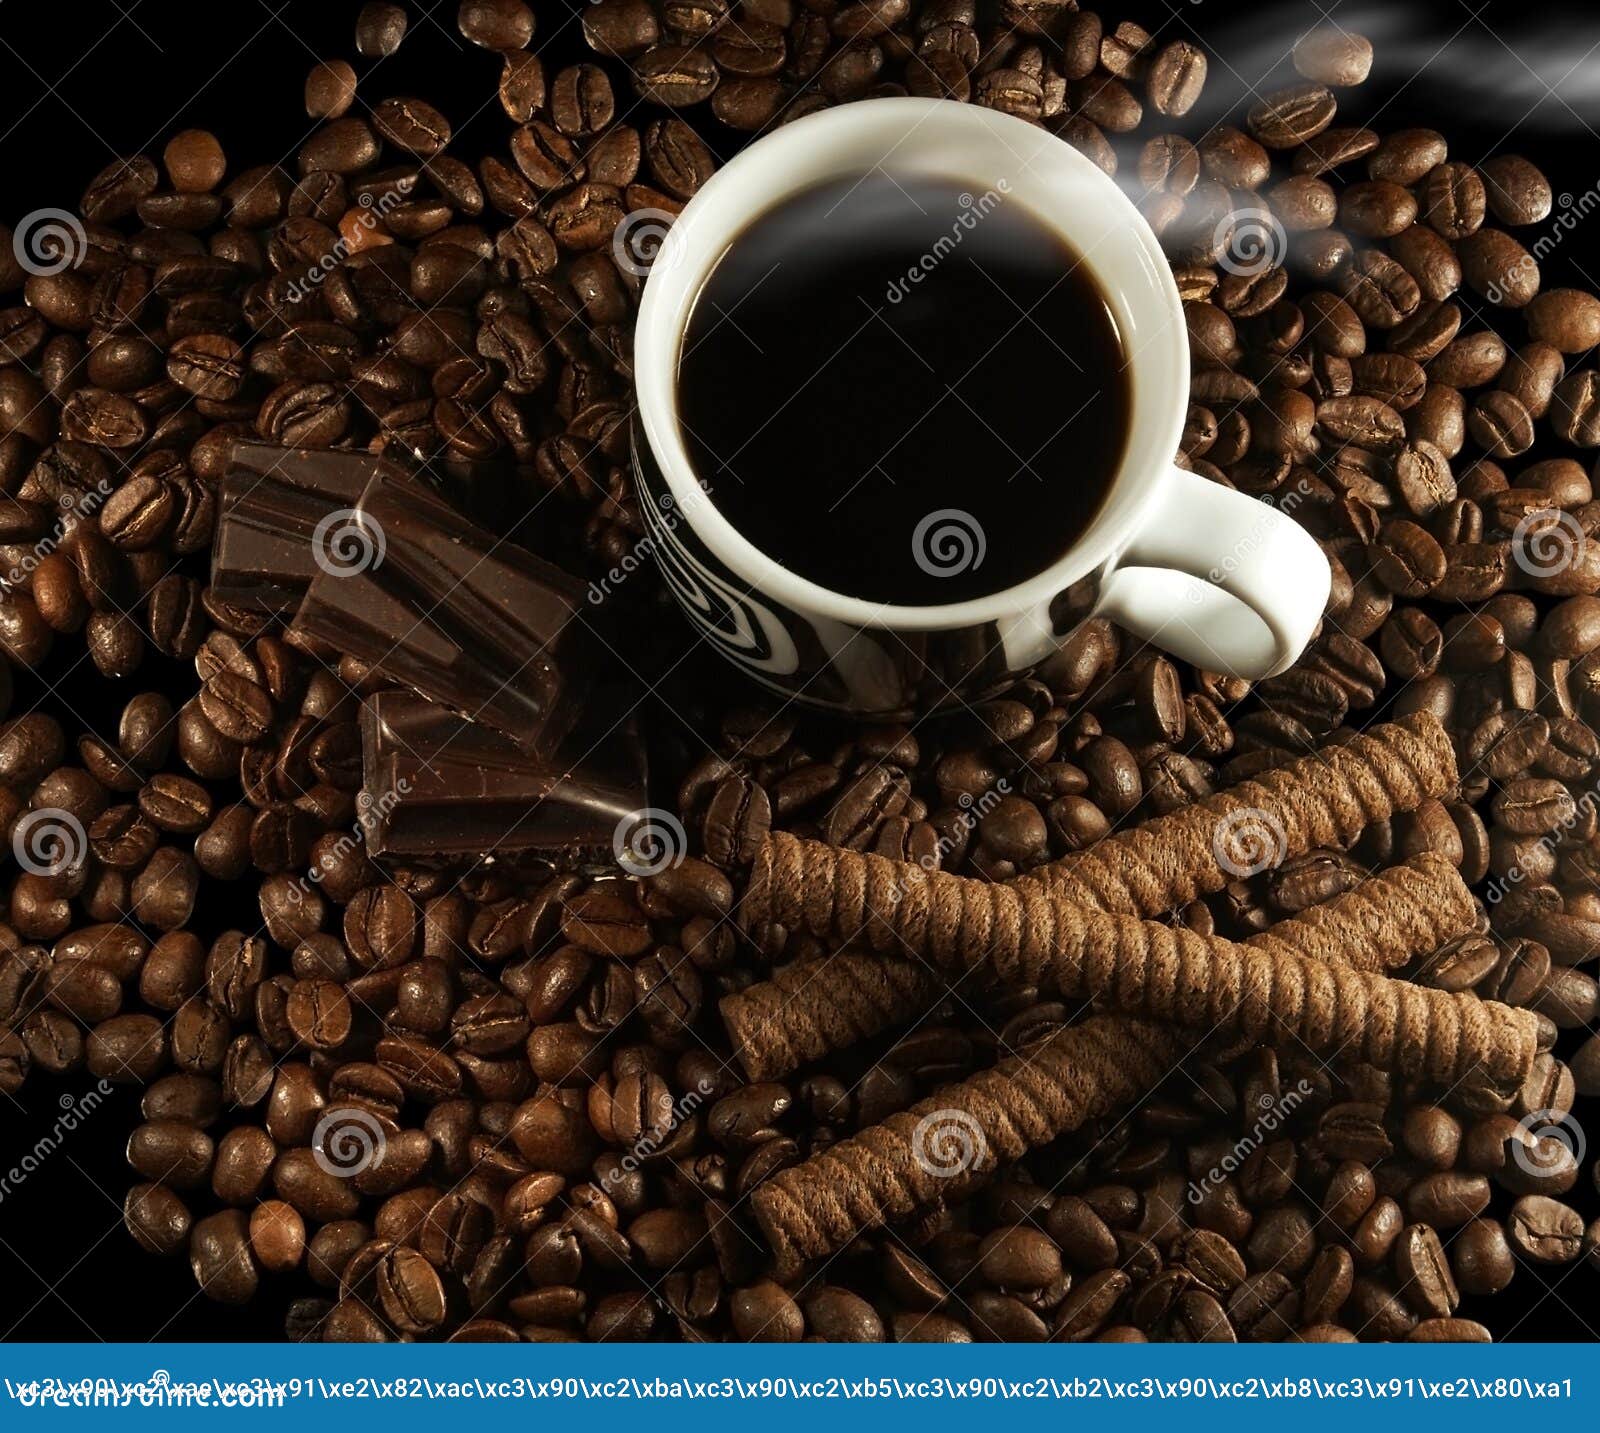 巧克力与咖啡图片下载 - 觅知网